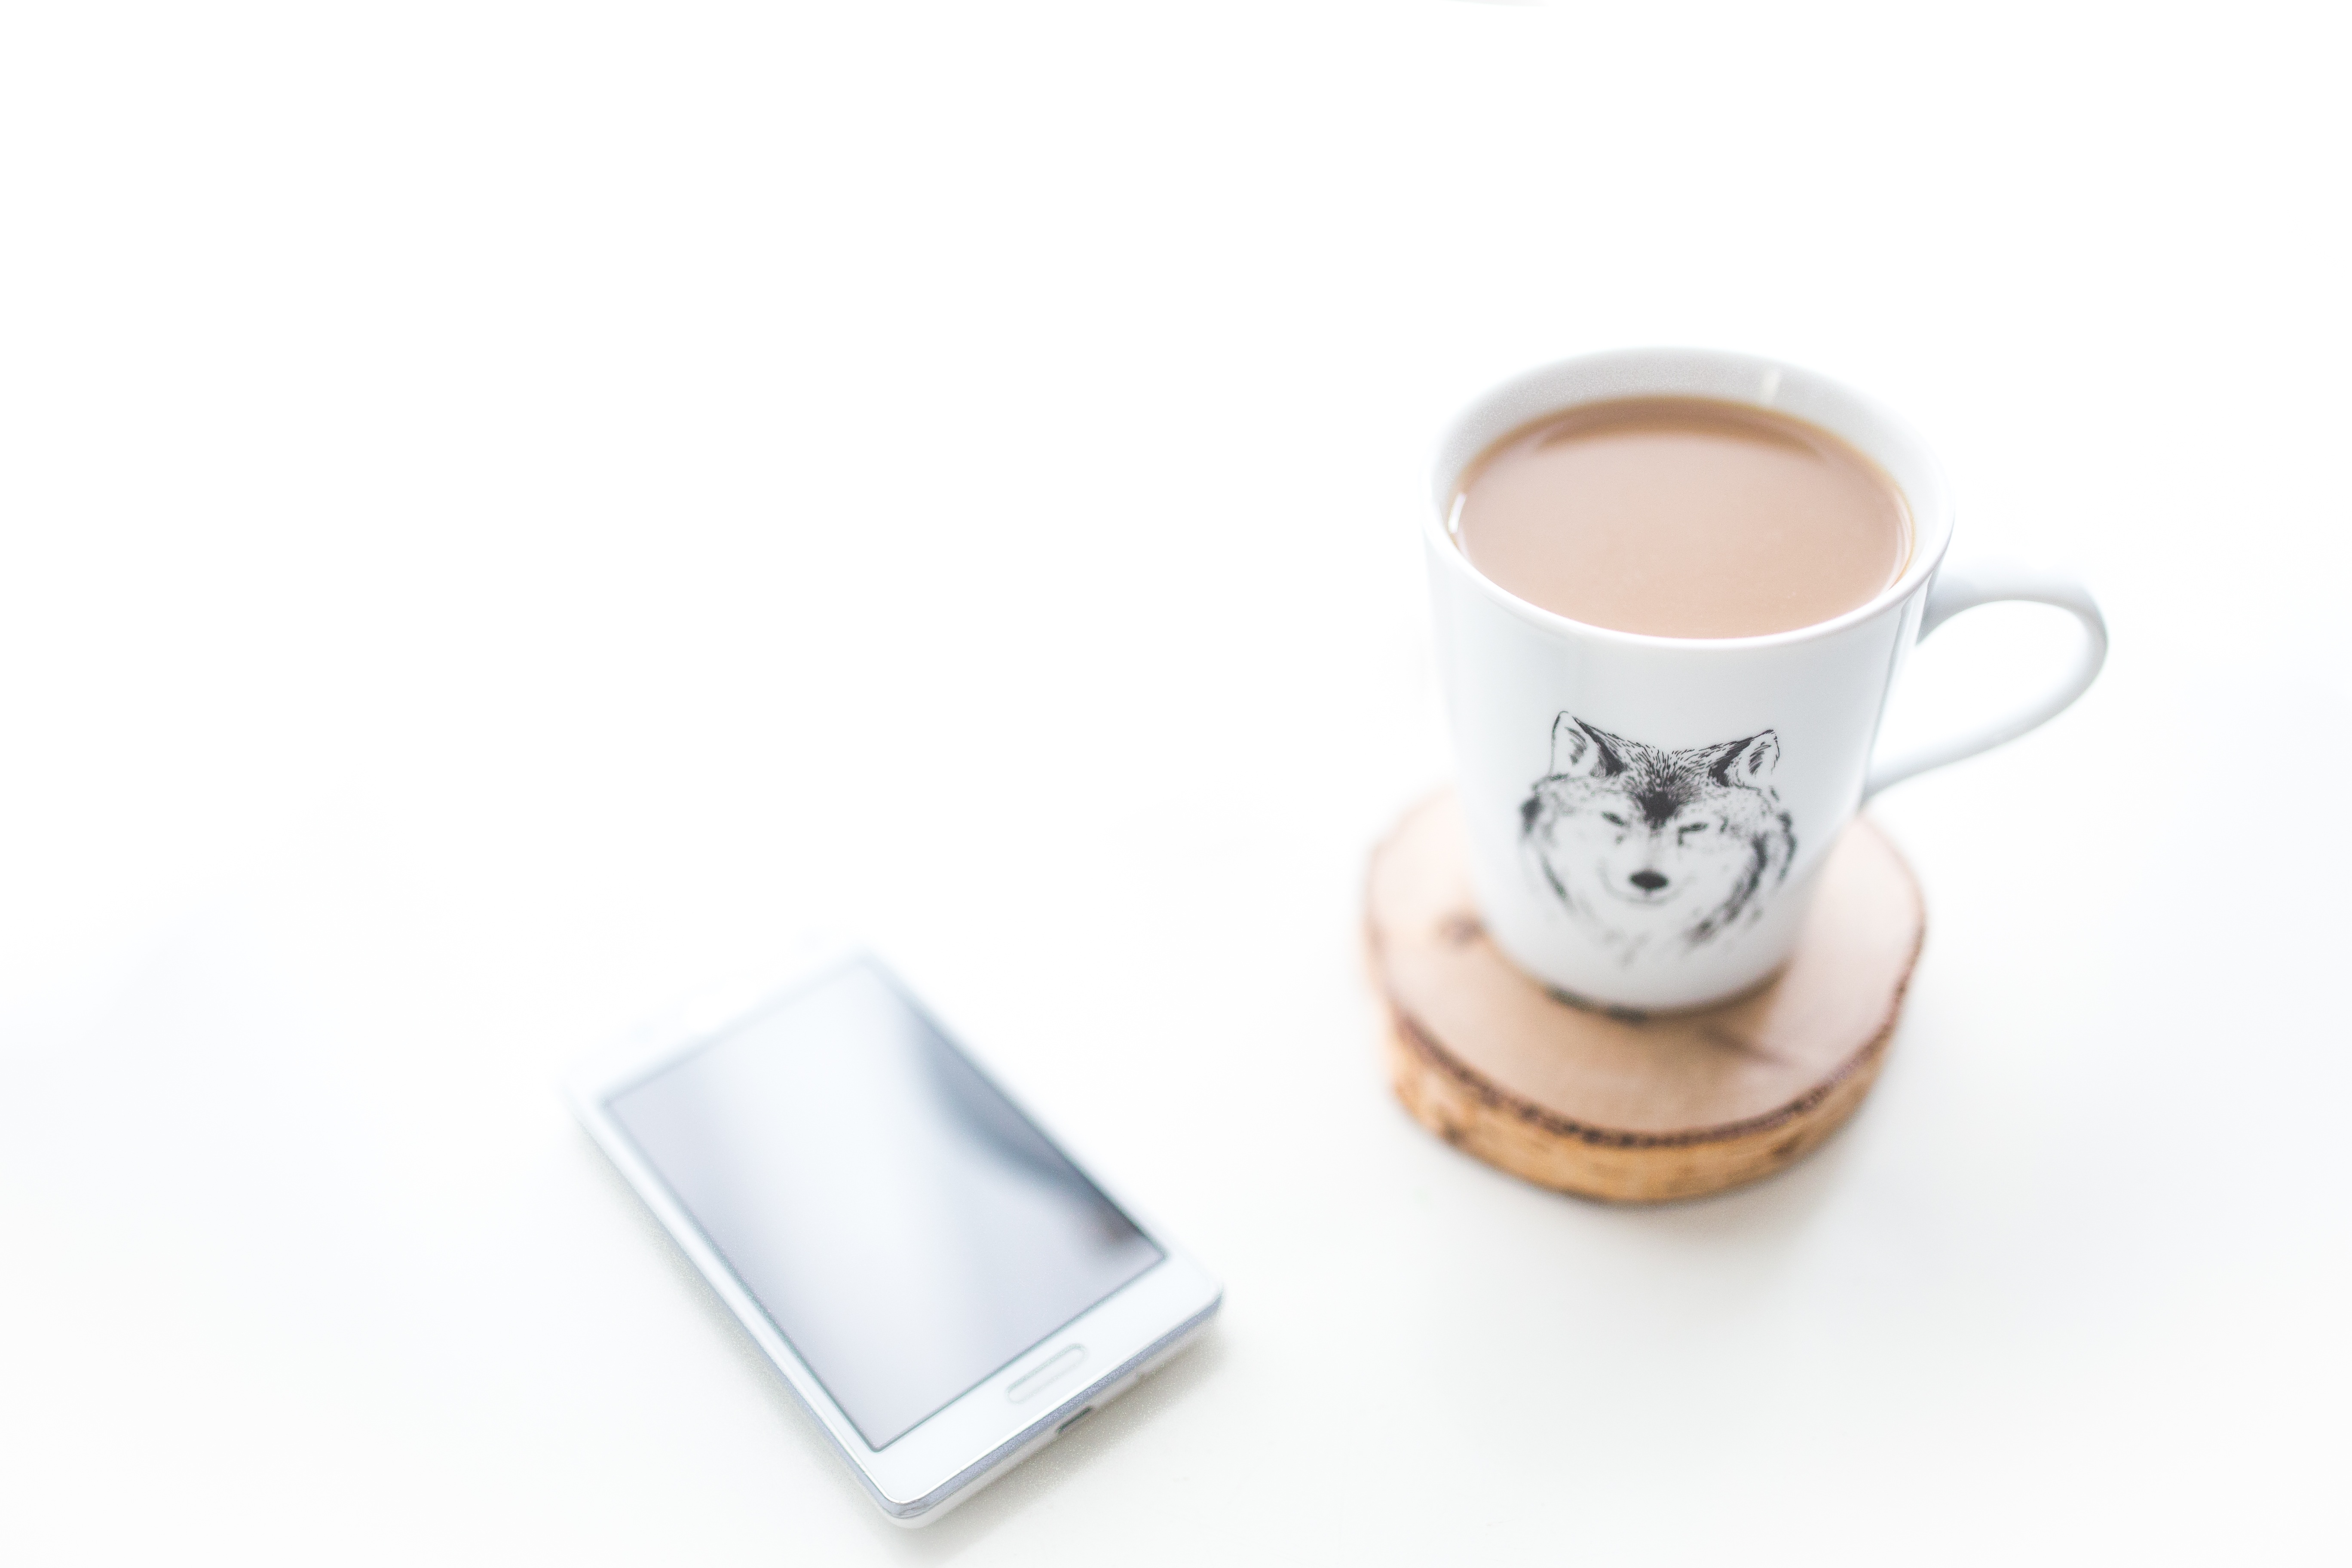 На письменном столе лежит телефон и чашка с кофе